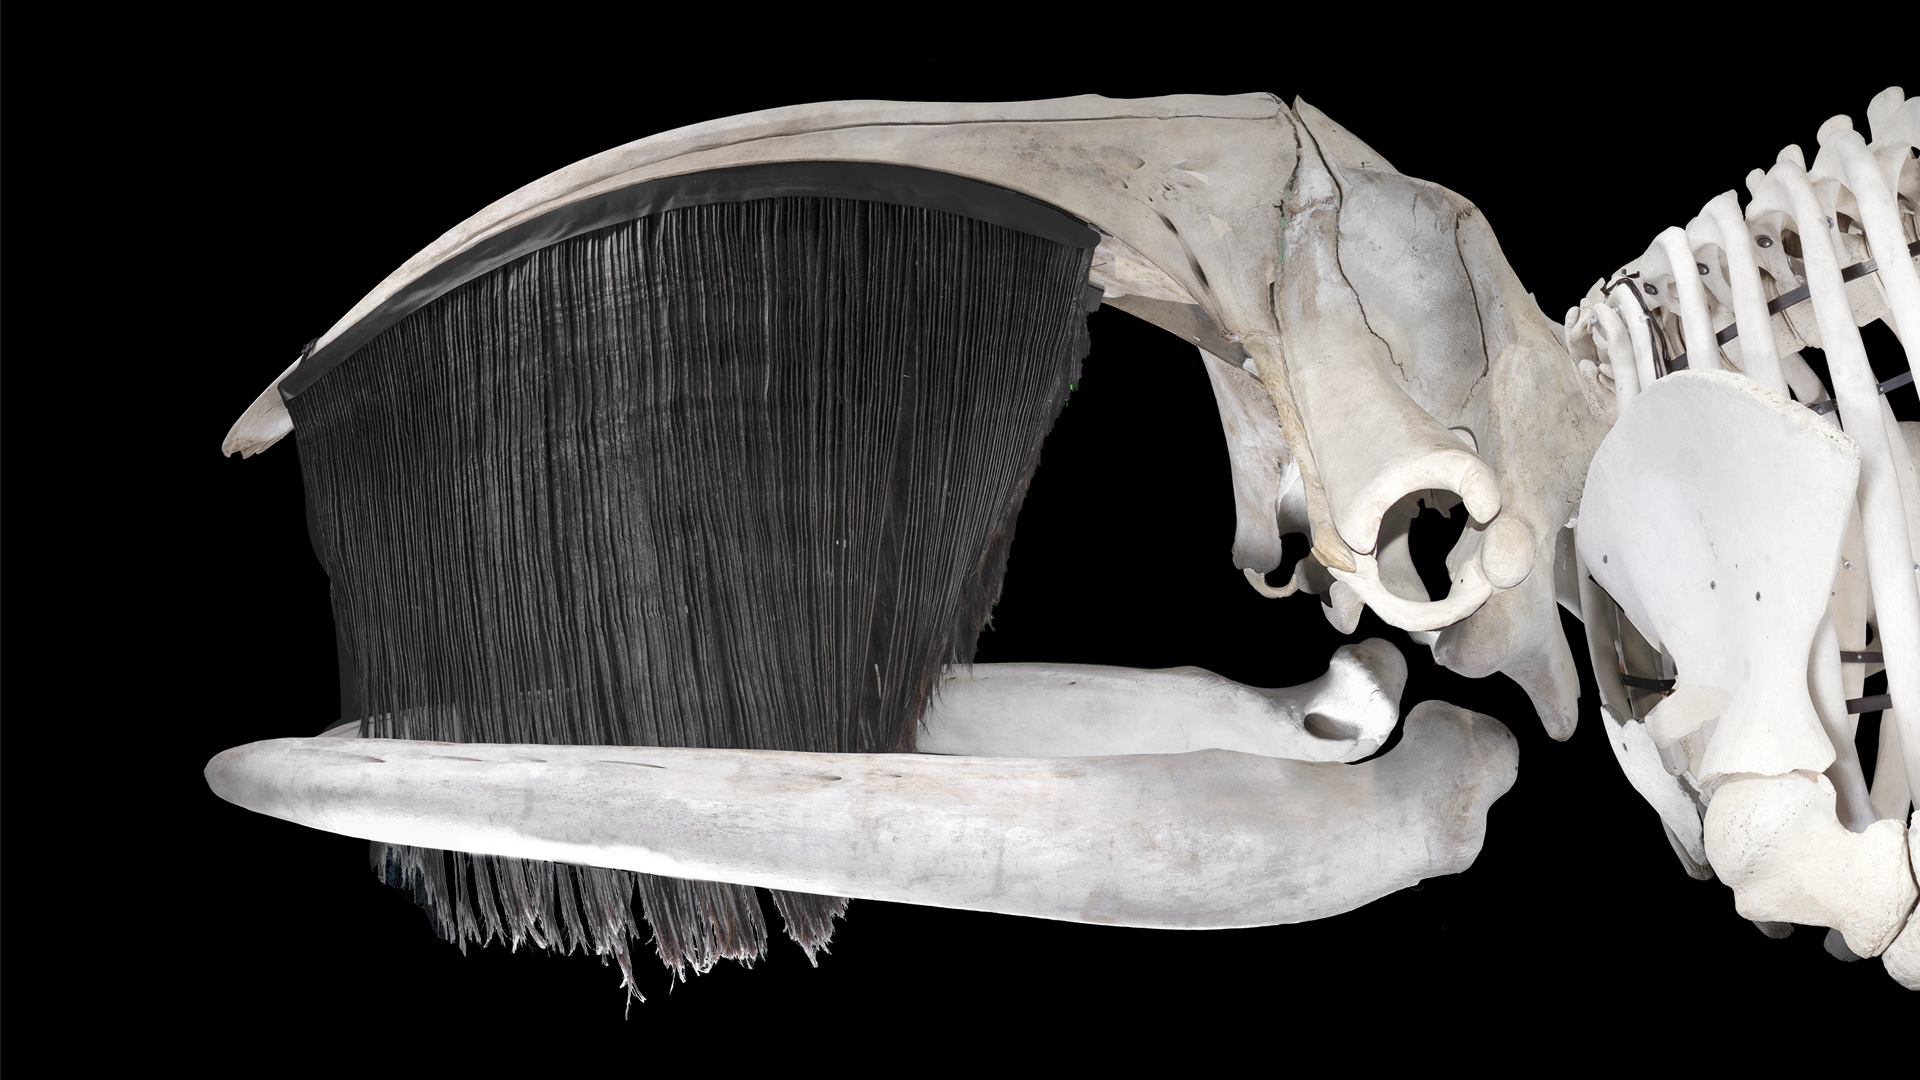 Squelette de baleine avec de très longs fanons noirs sur la mâchoire supérieure.